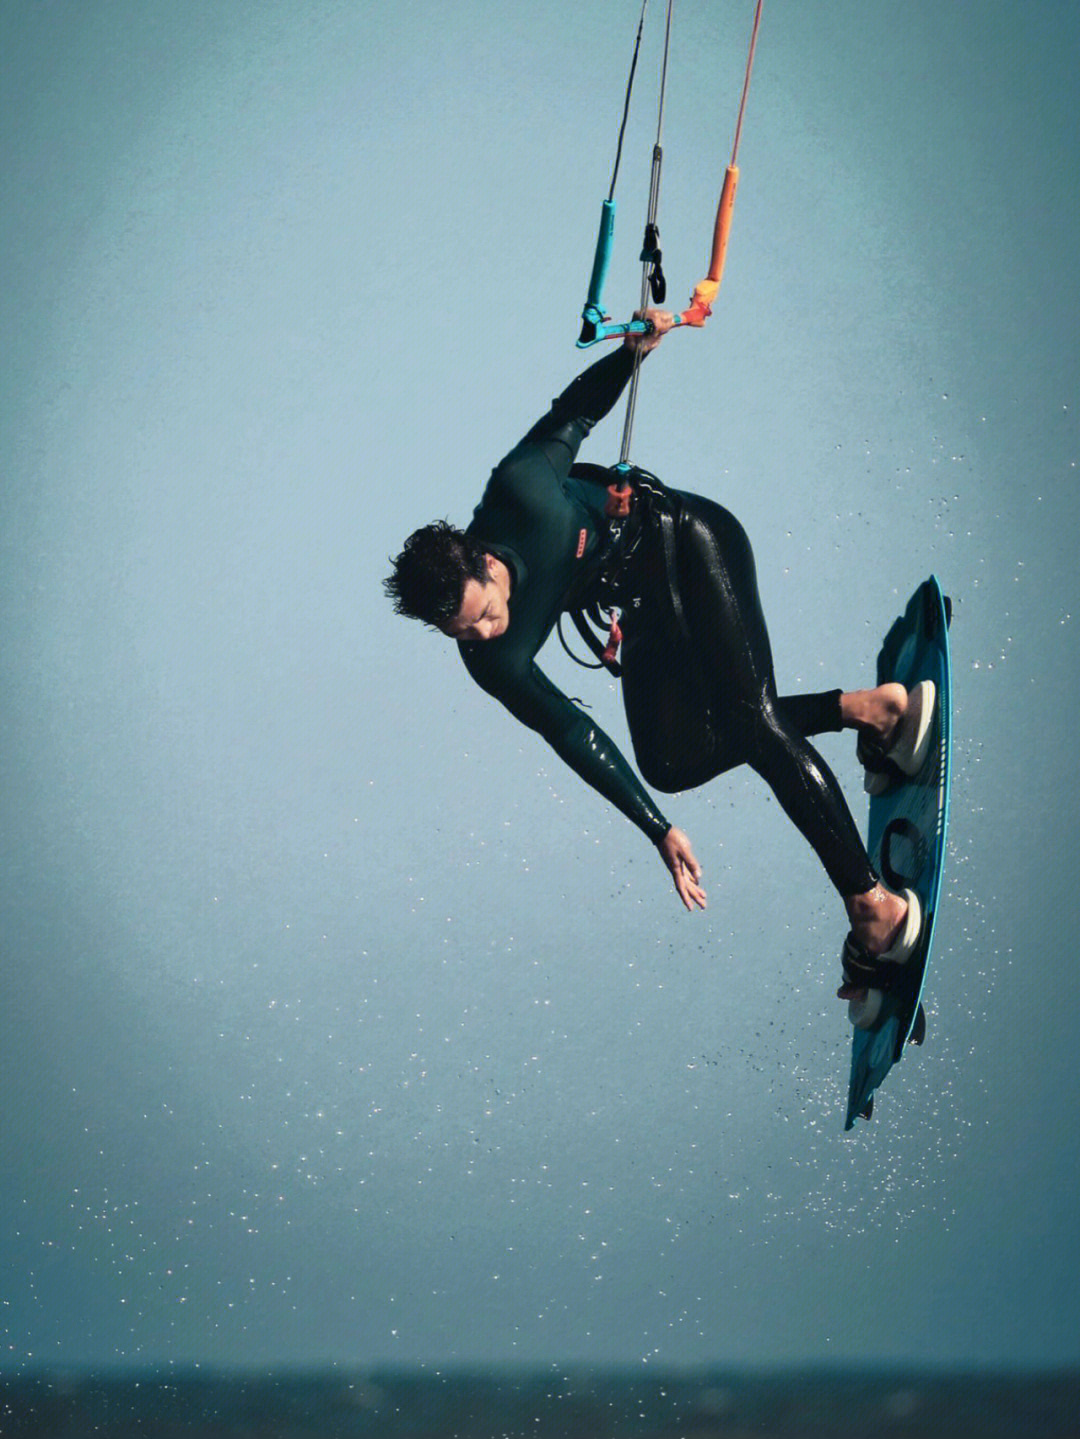 风筝冲浪】kitesurfing/kiteboarding/flysurfing是一项借助充气风筝